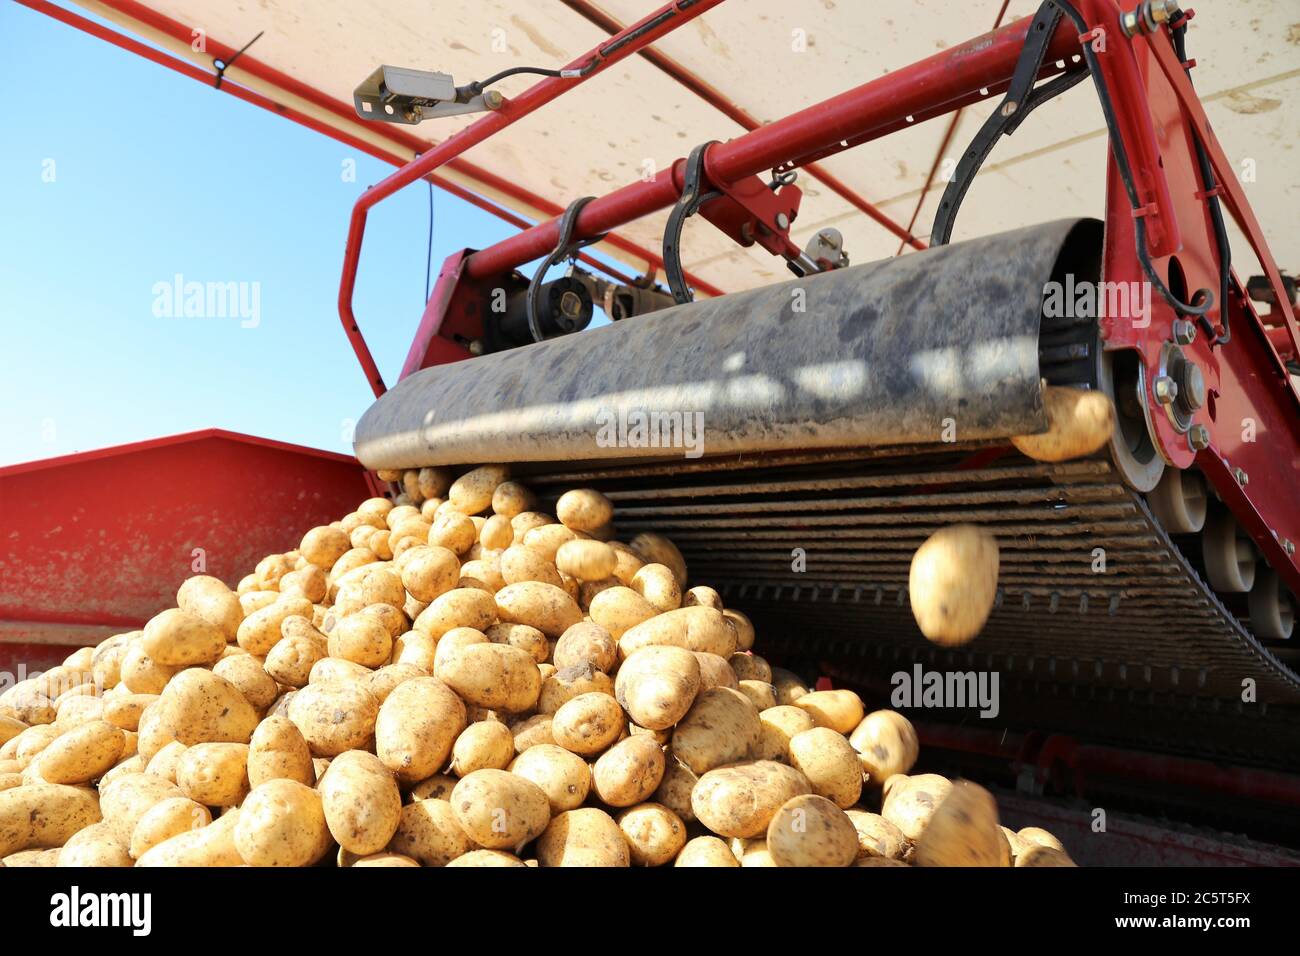 Landwirtschaftliche Kartoffelernte - Agricultural potato harvest Stock Photo